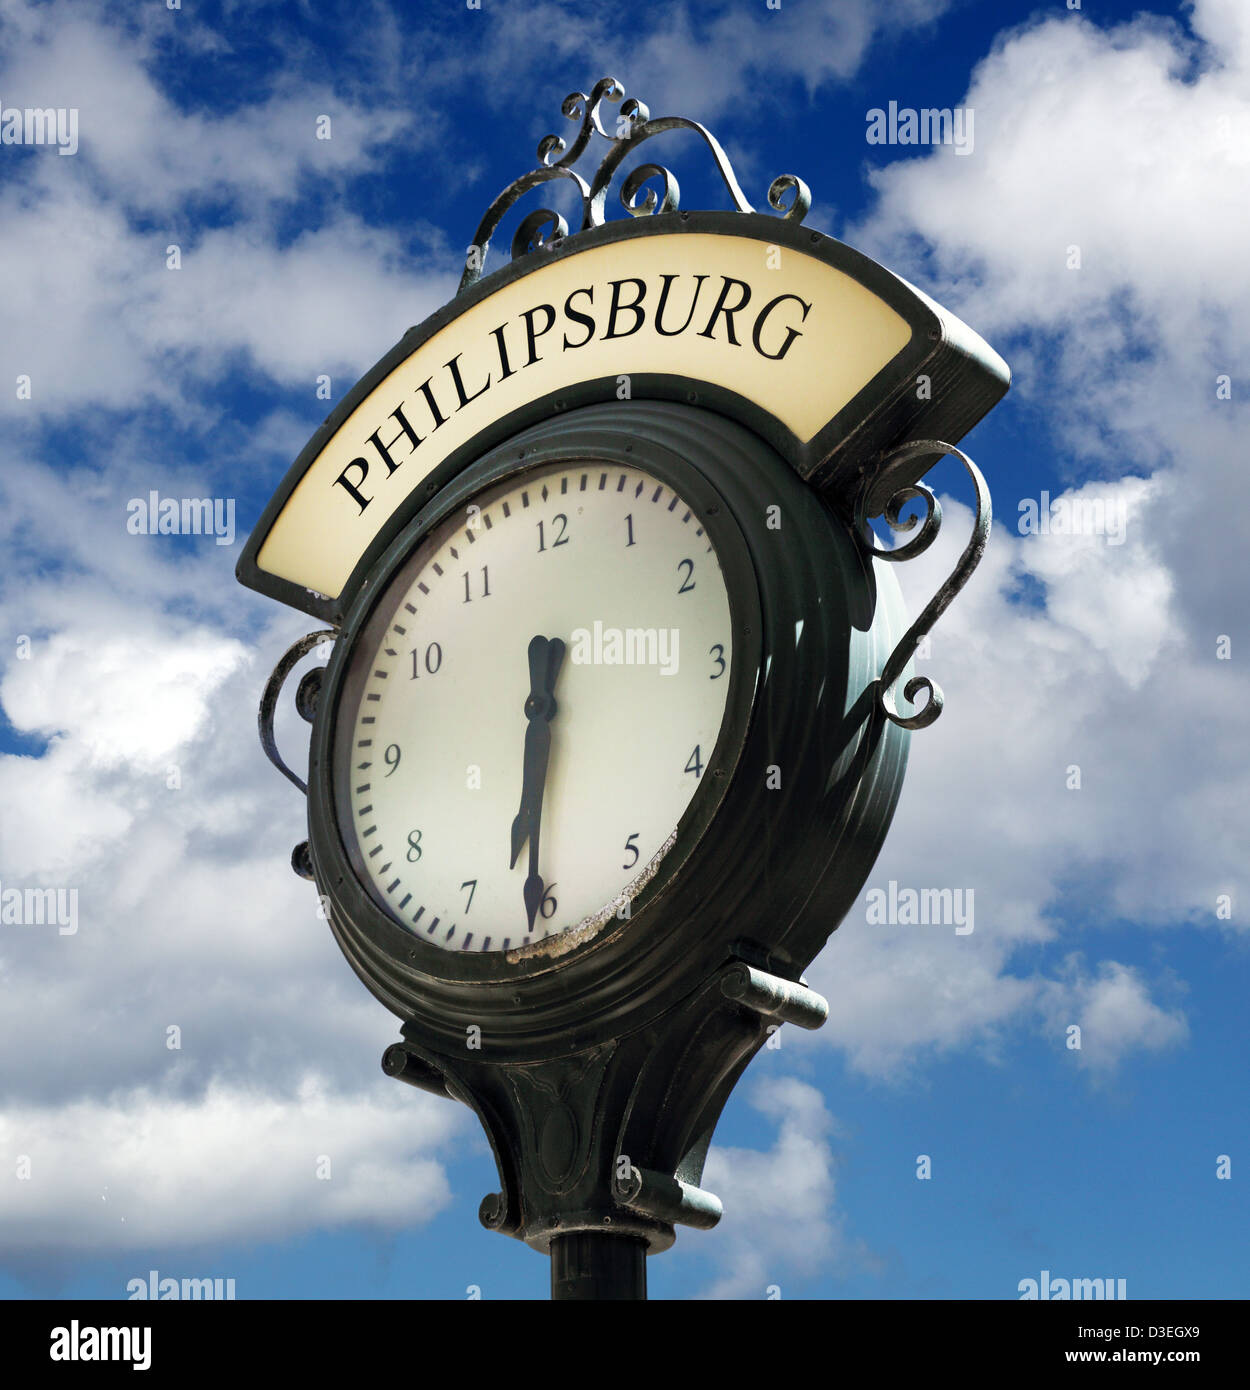 PHILLIPSBURG ST MAARTEN CARRIBEAN ISLAND CLOCK Stock Photo